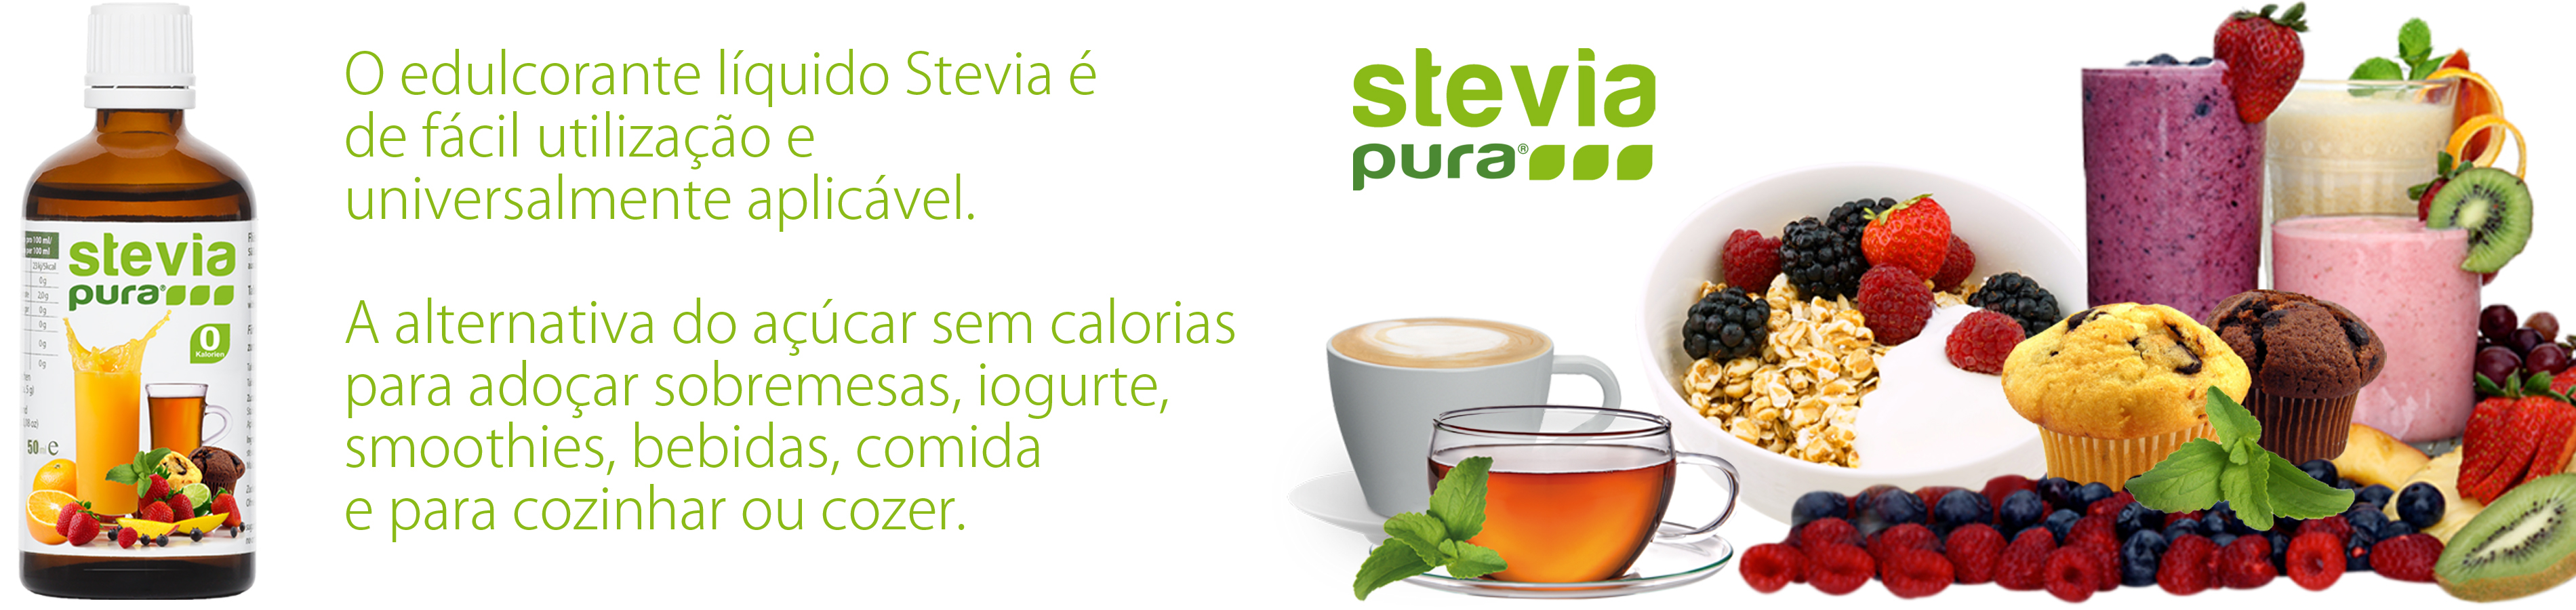 Comprar Stevia liquido adocante liquido Stevia 50ml...